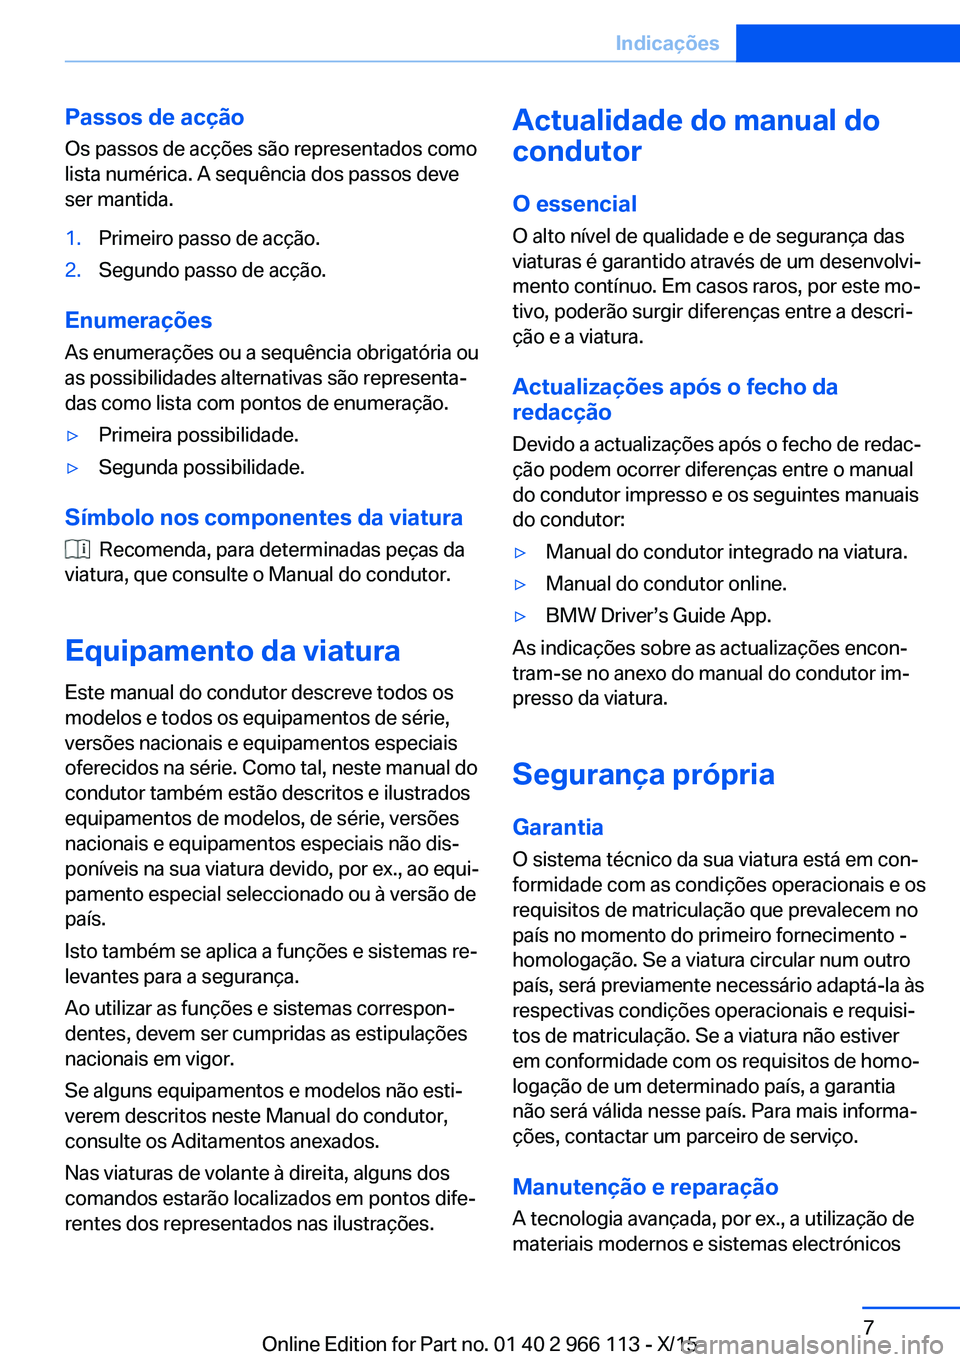 BMW 3 SERIES 2016  Manual do condutor (in Portuguese) Passos de acção
Os passos de acções são representados como
lista numérica. A sequência dos passos deve
ser mantida.1.Primeiro passo de acção.2.Segundo passo de acção.
Enumerações
As enume